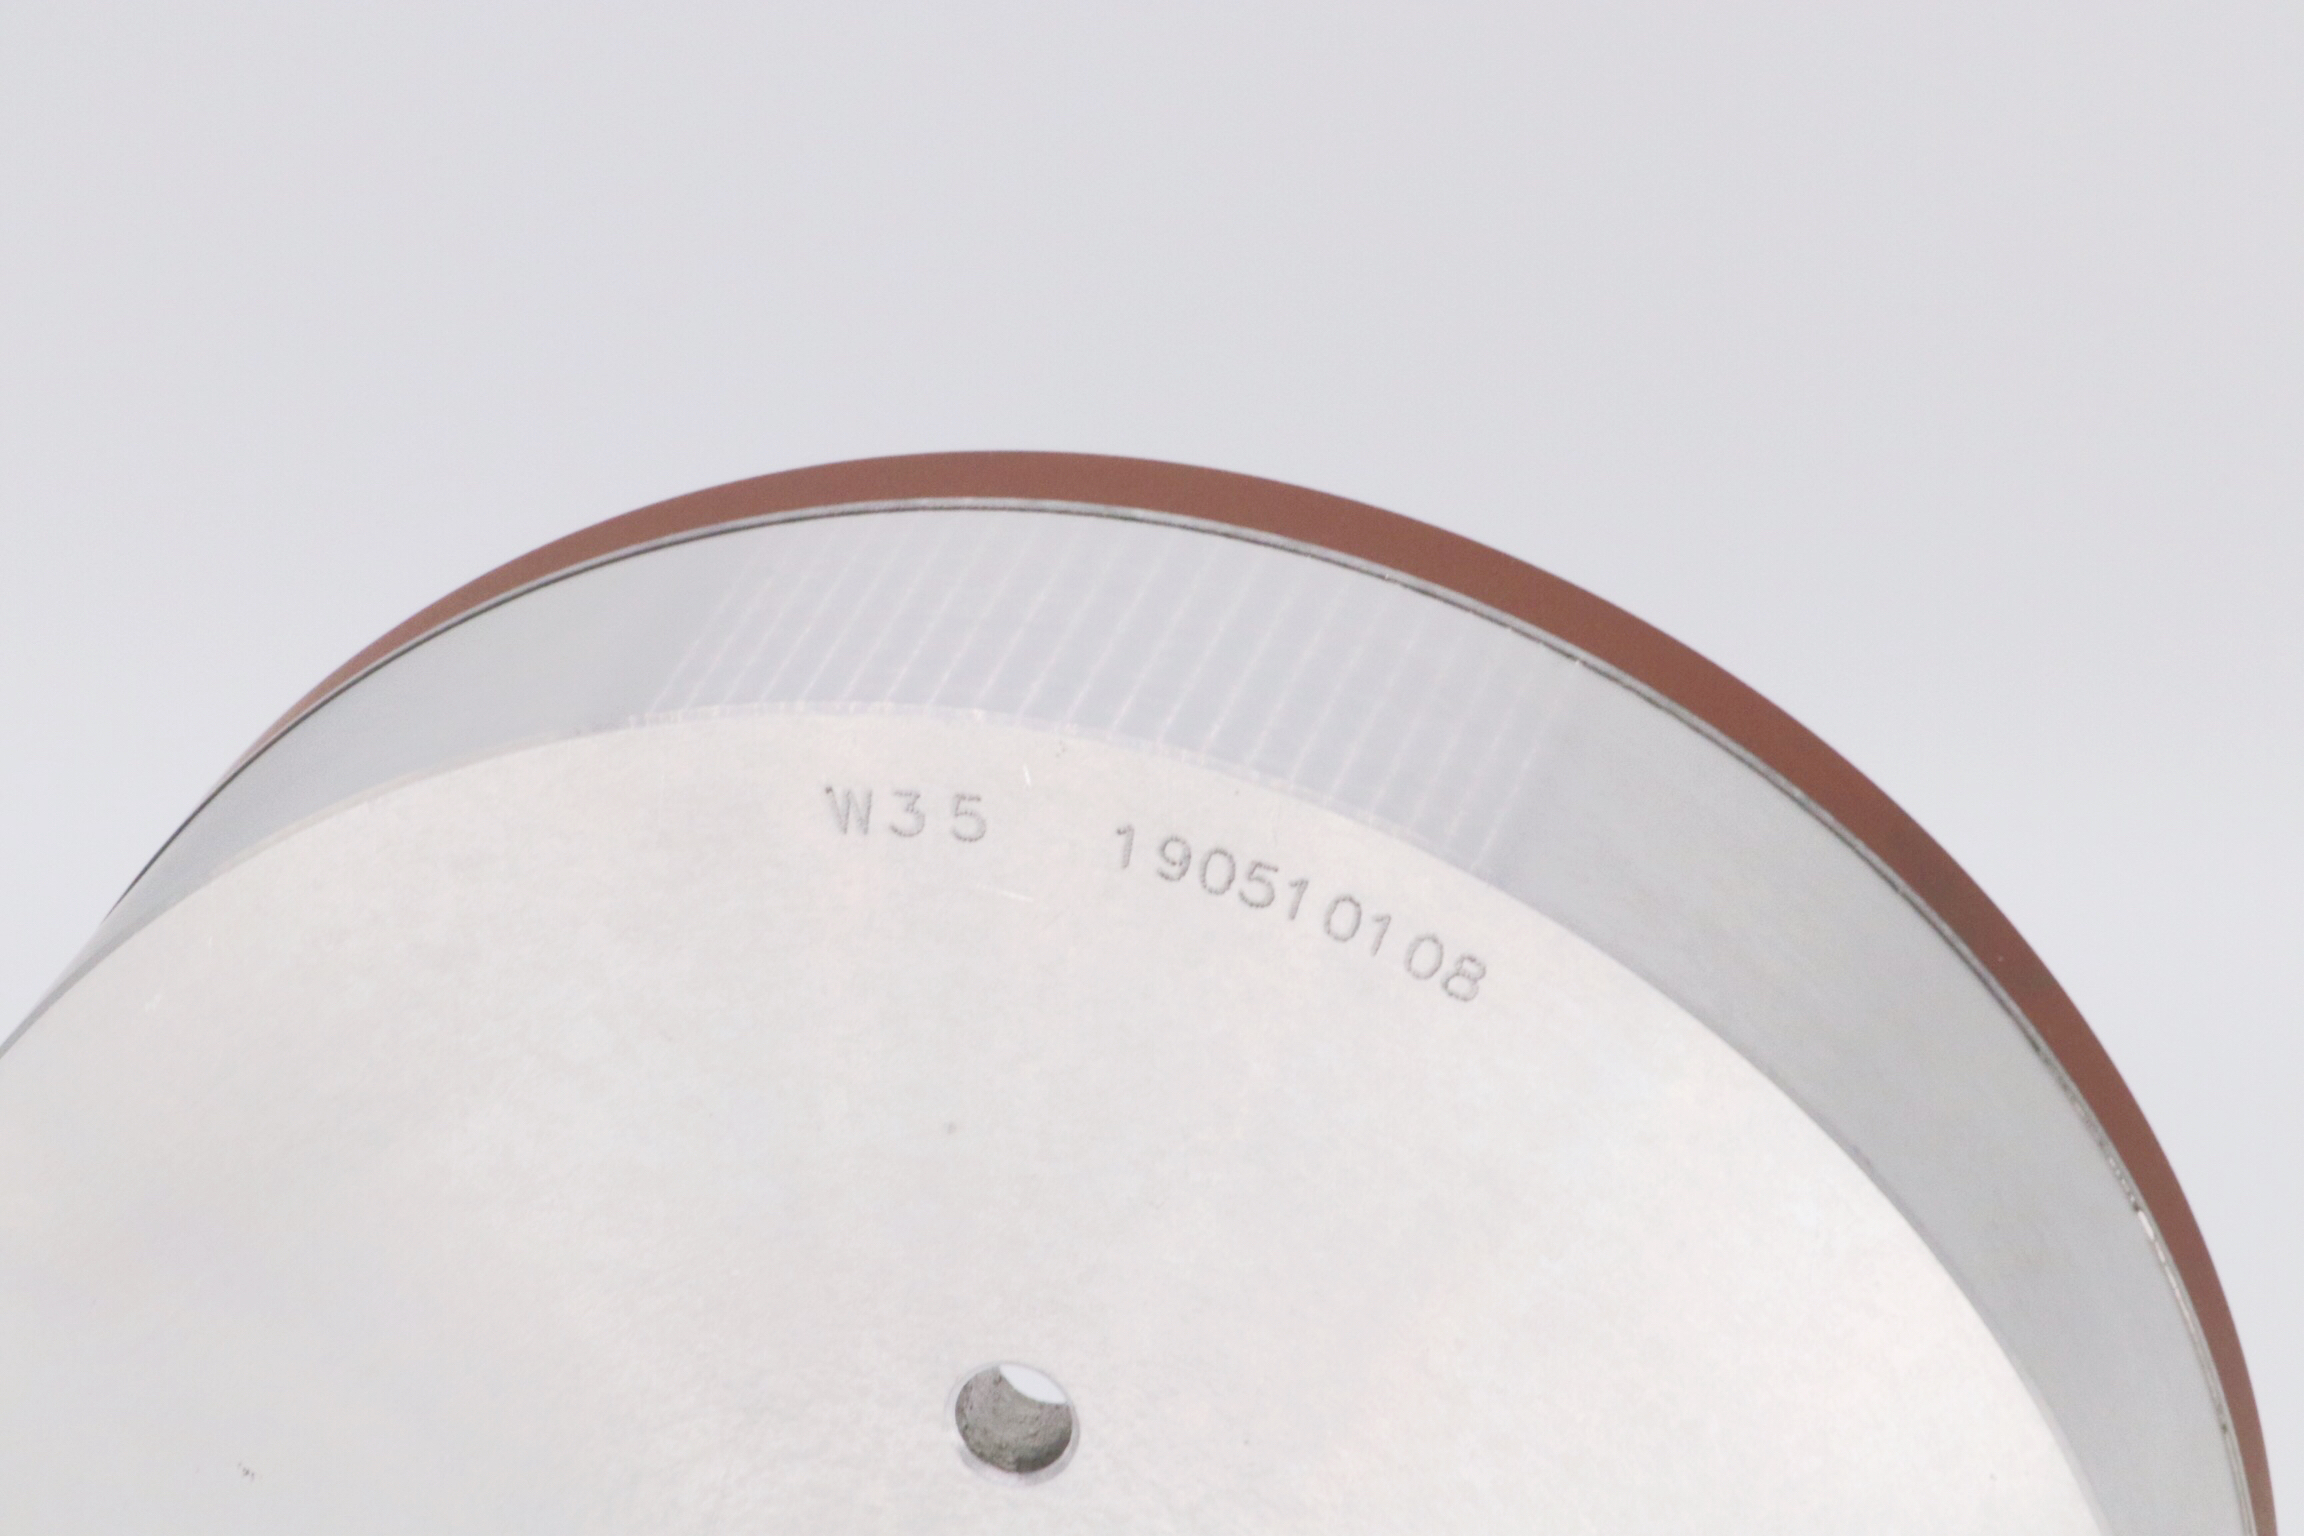 Resin Diamond Wheel for Face Grinding of Tungsten Carbide Tips